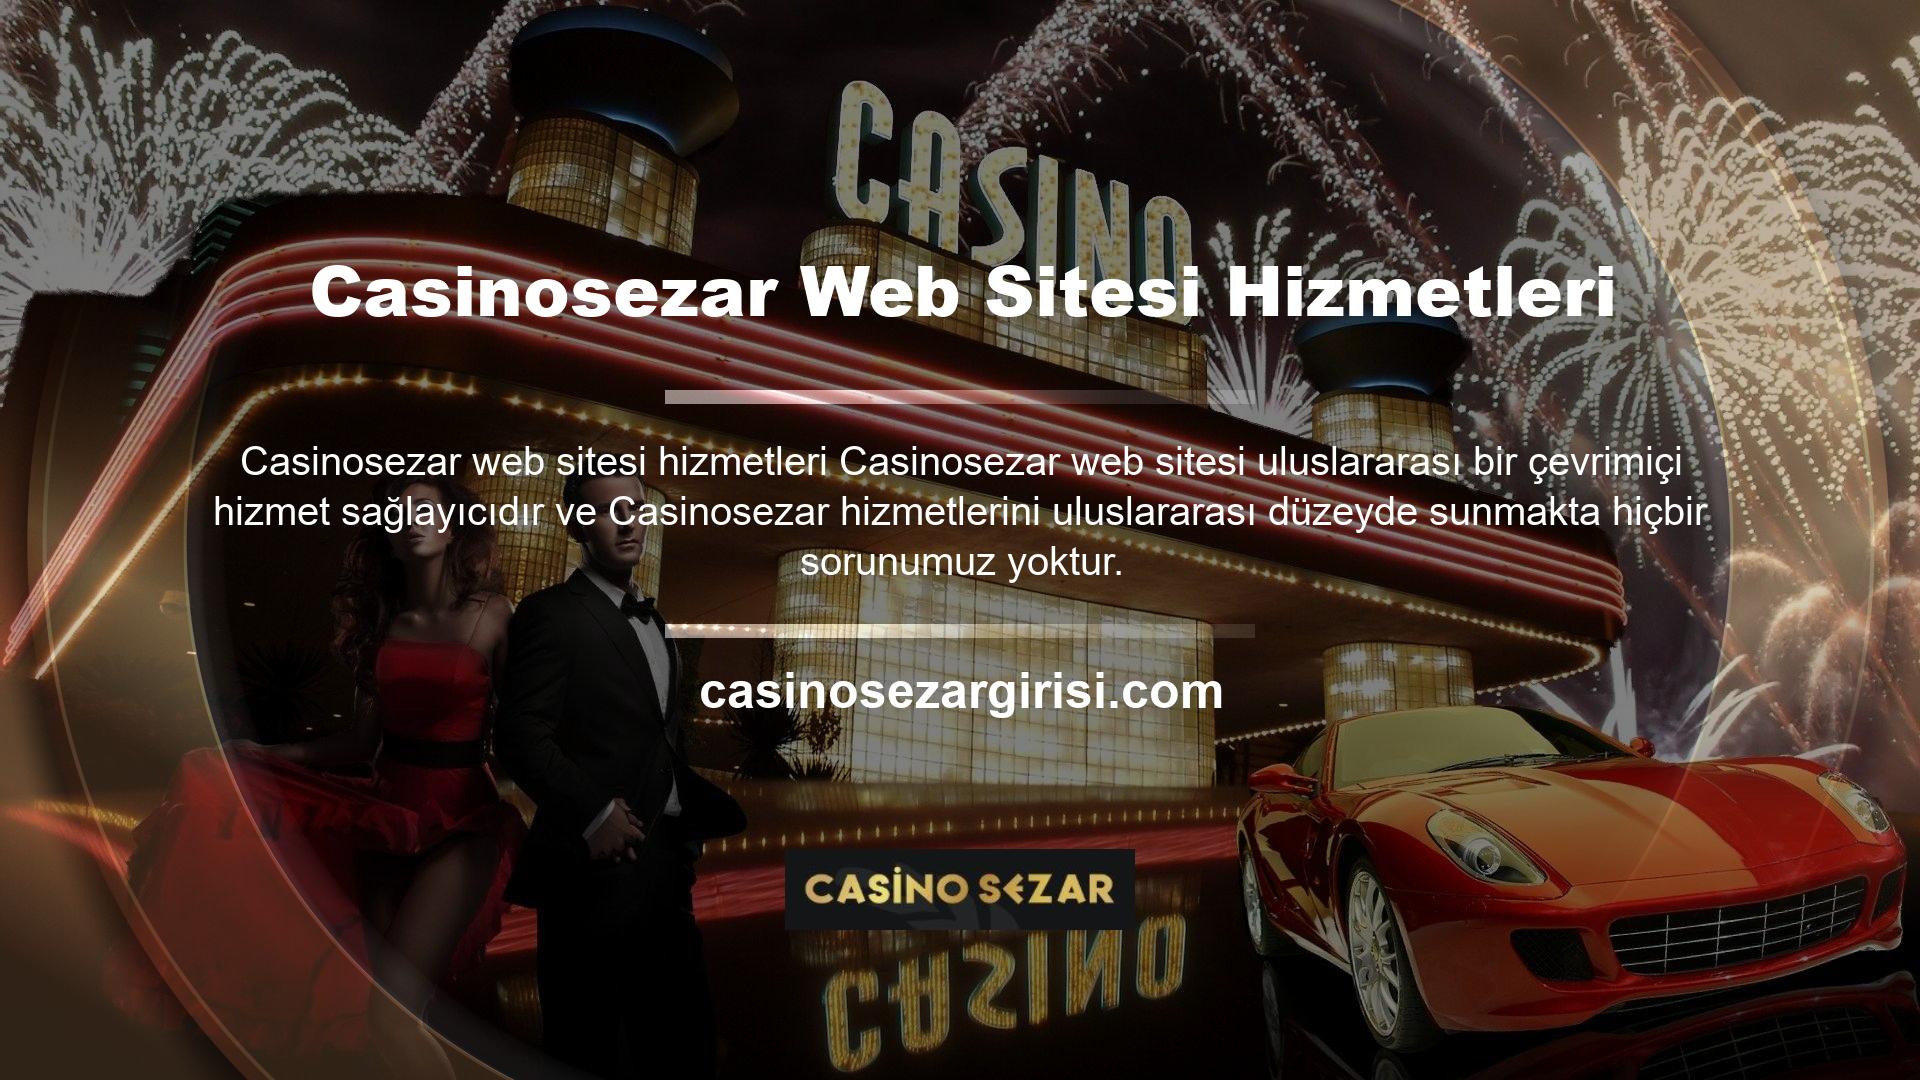 Casinosezar, Türkiye'den üye kabul ederek ve Türk kullanıcılara çevrimiçi hizmetler sunarak Türkiye pazarına girdi